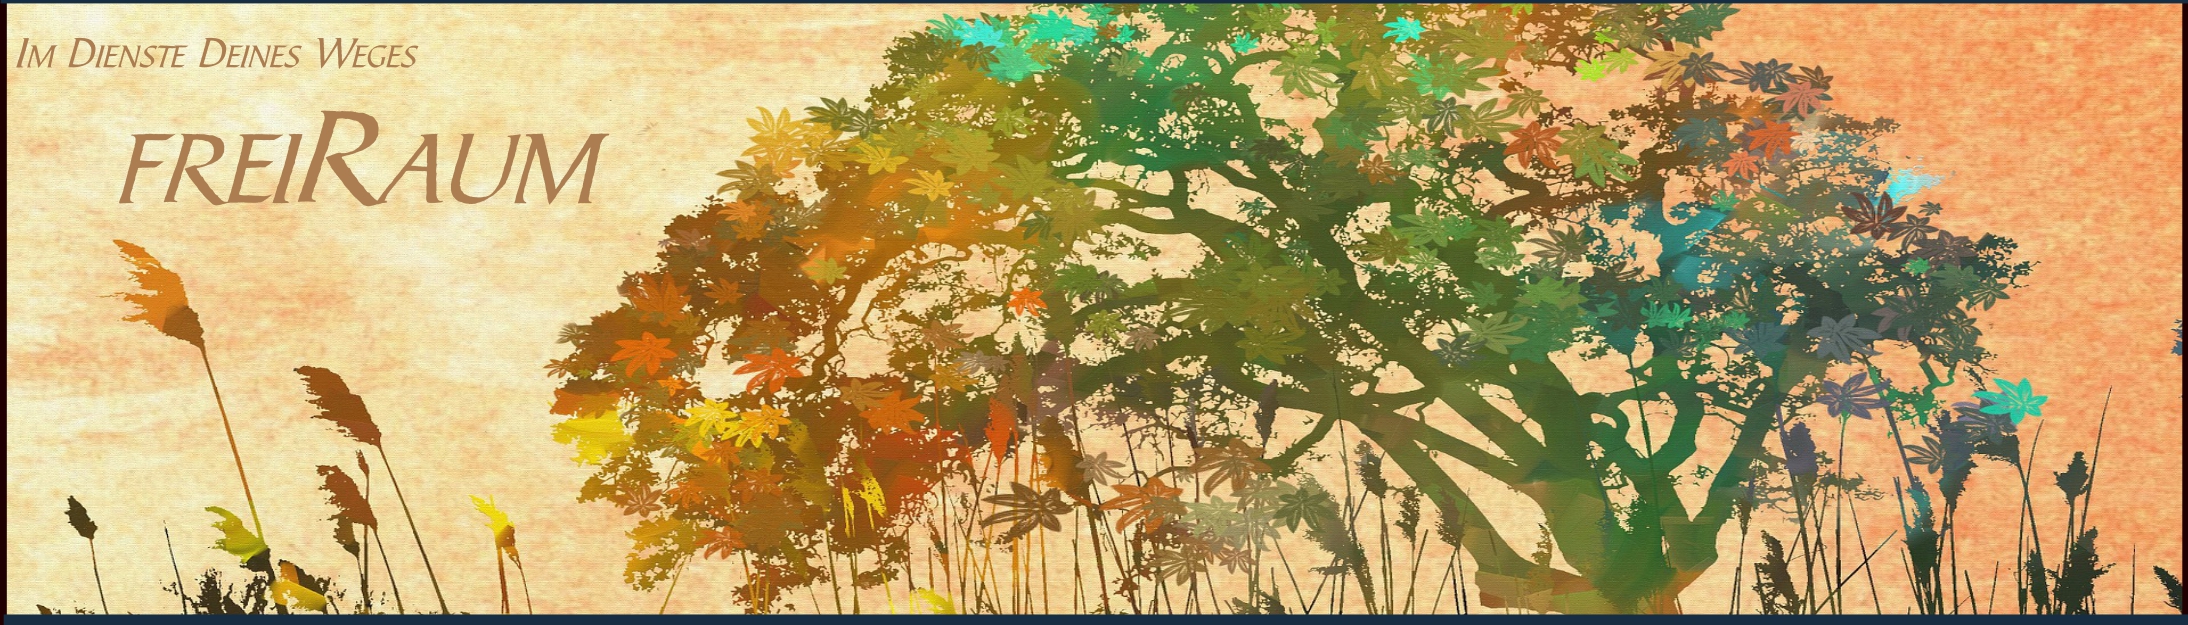 freiRaum2-Banner-Baum-abstrakt bunt